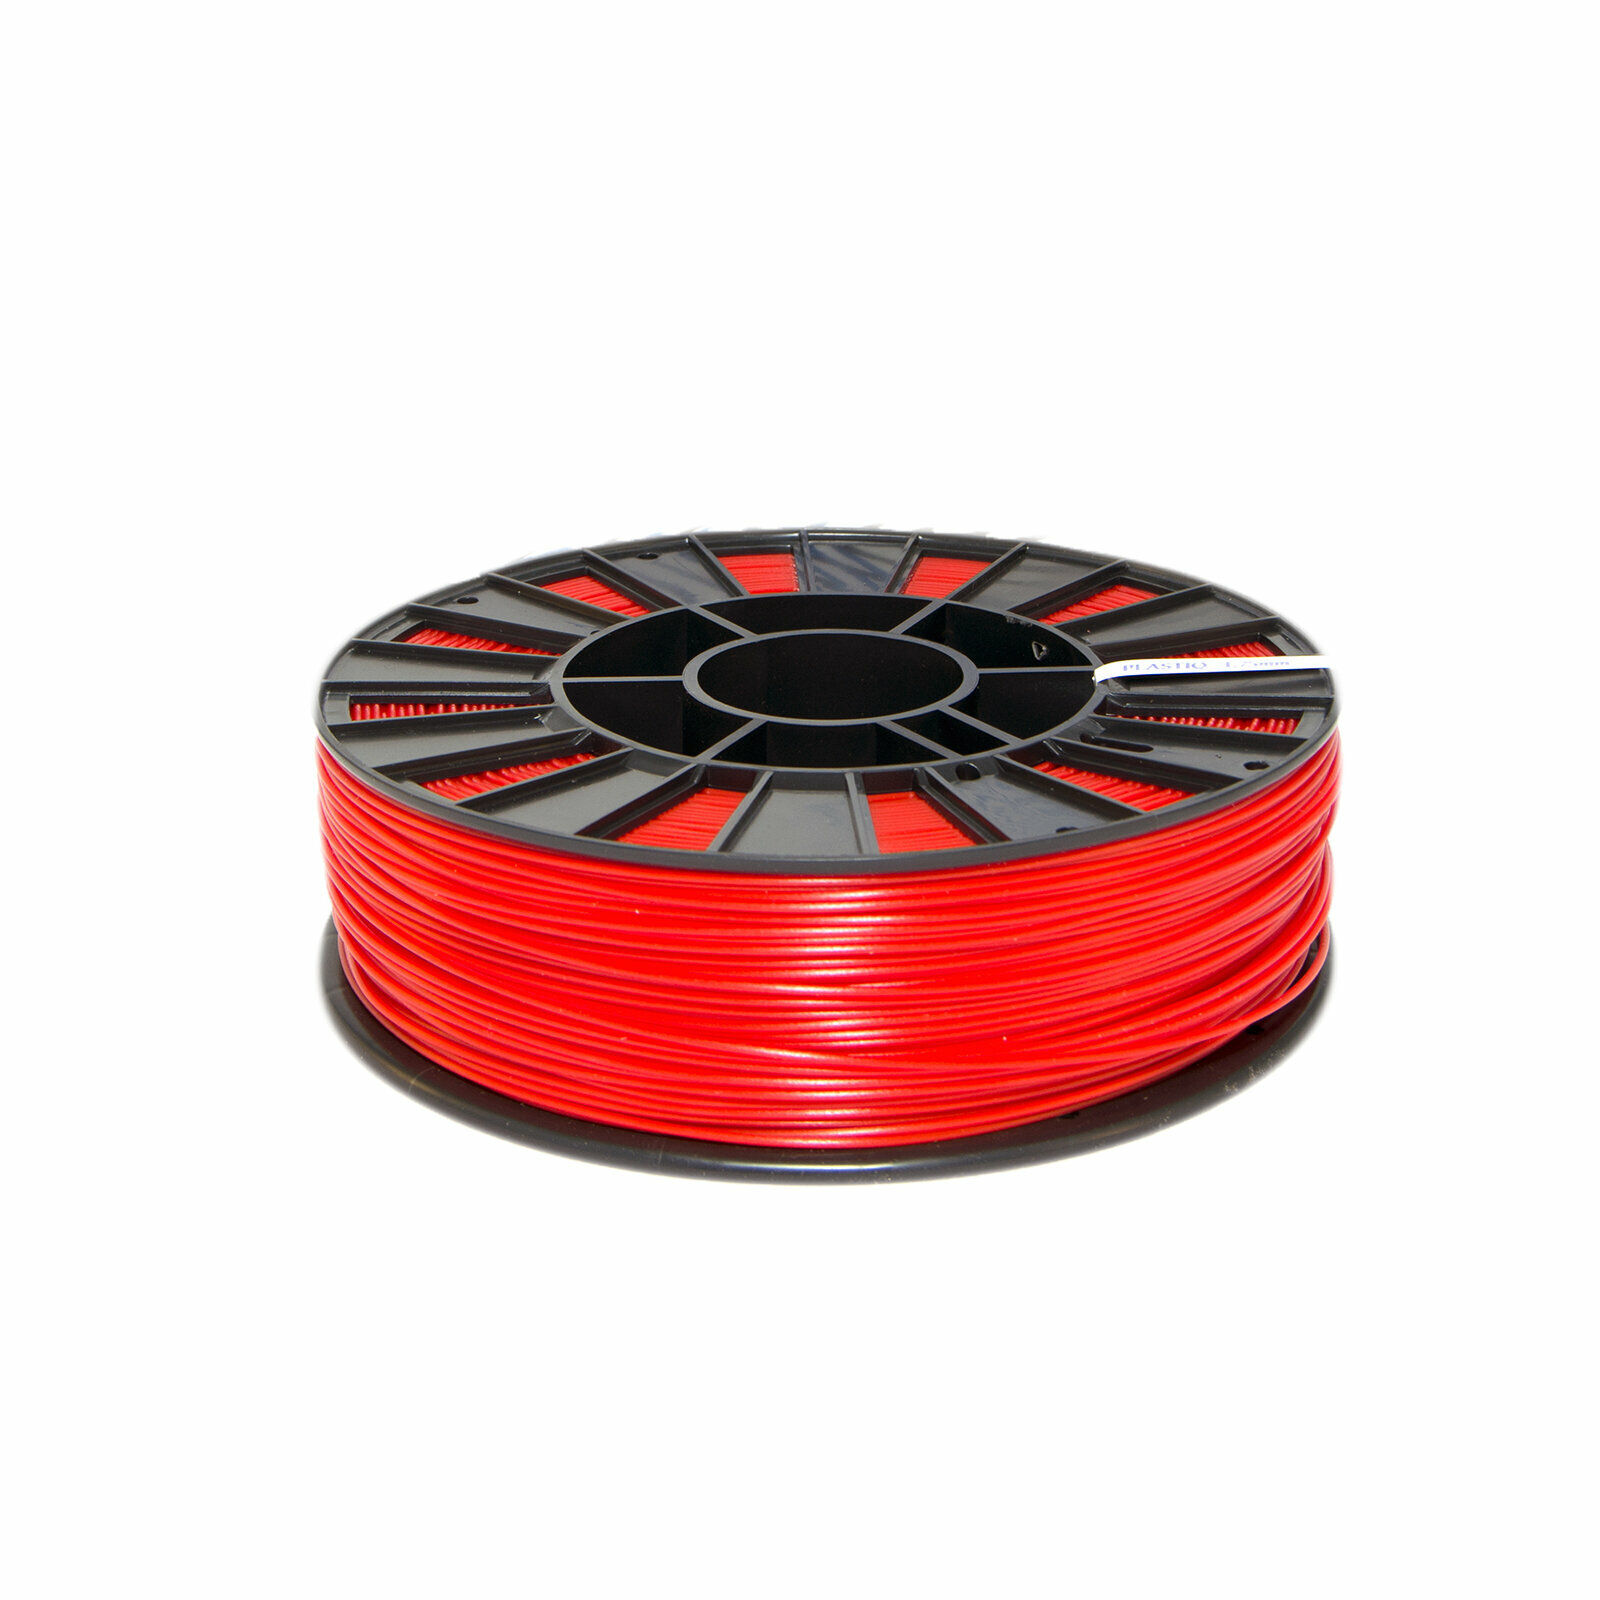 Пластик ABS для 3D принтера Красный Dewang 1.75мм 300 метров